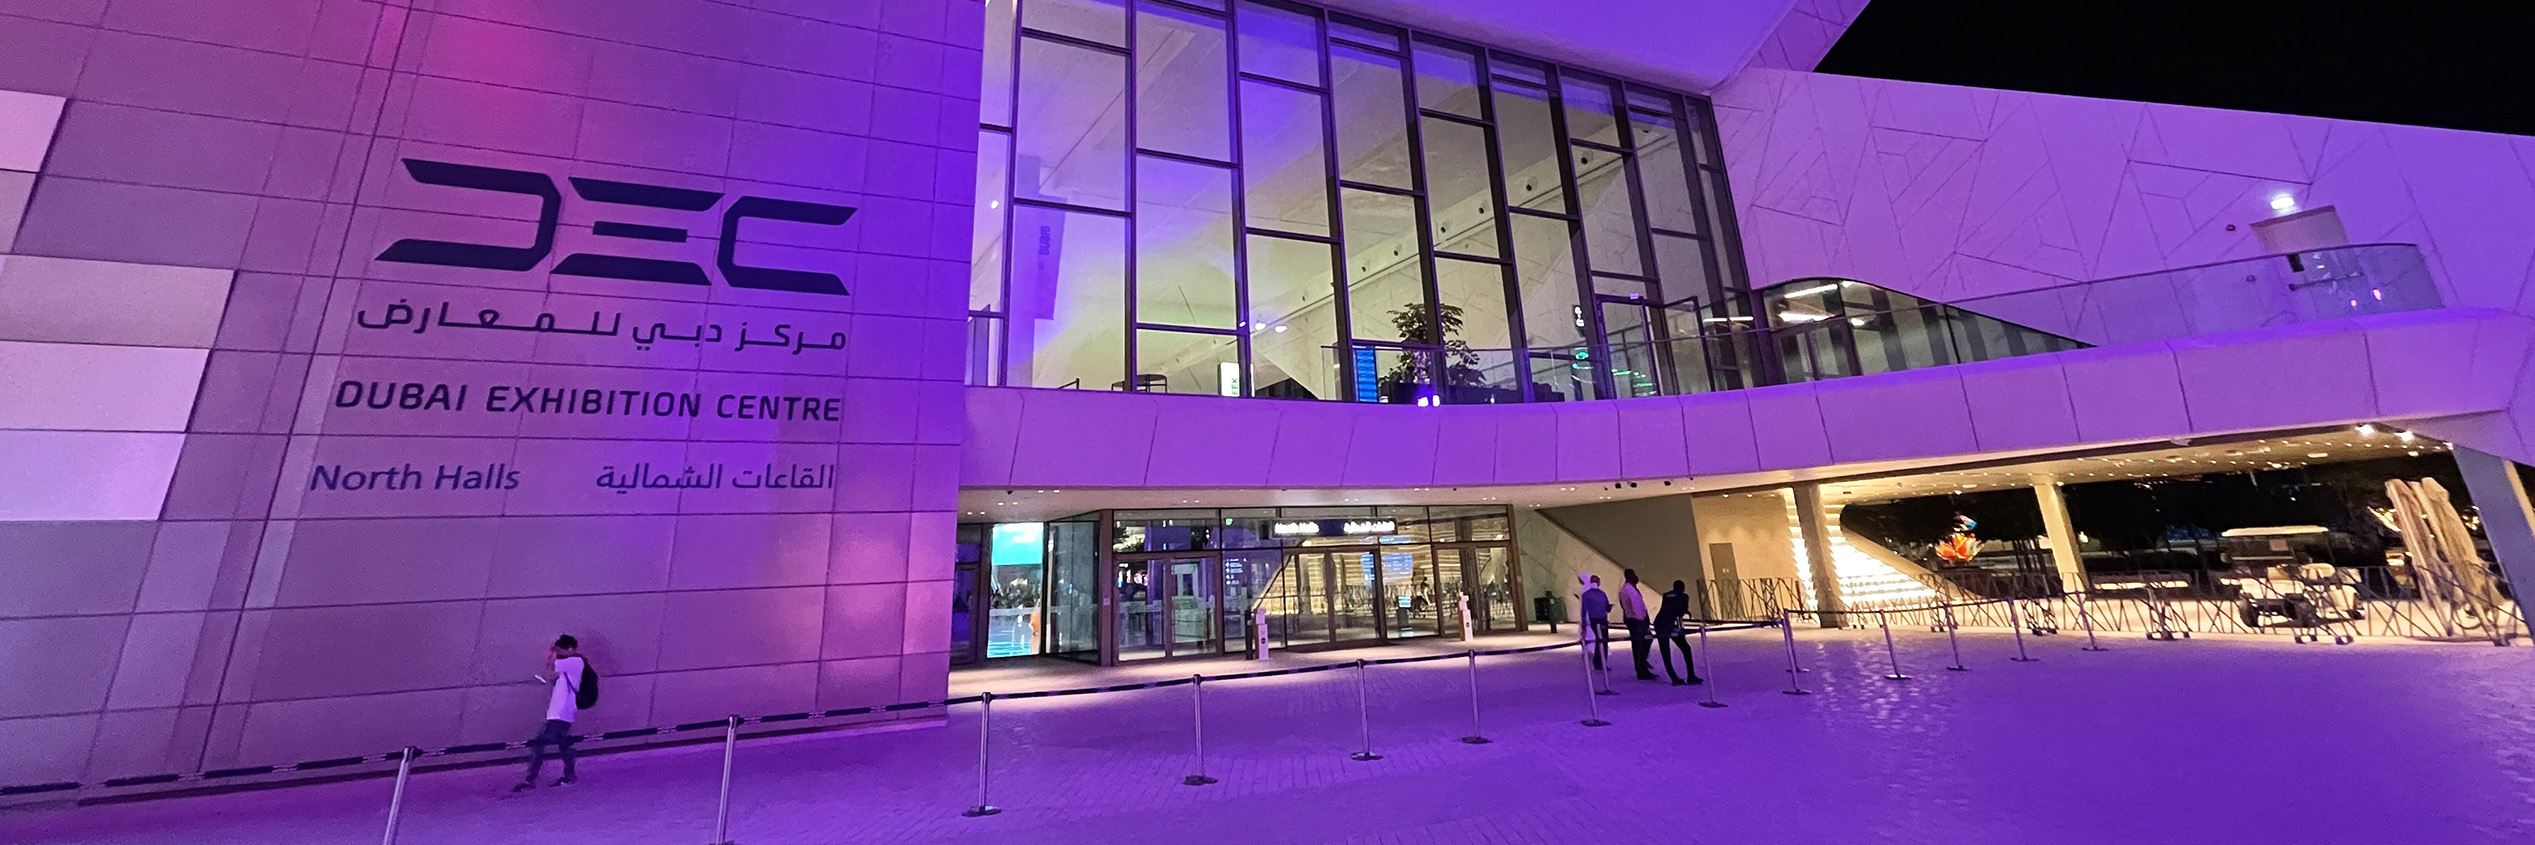 New Exhibition Center Dubai